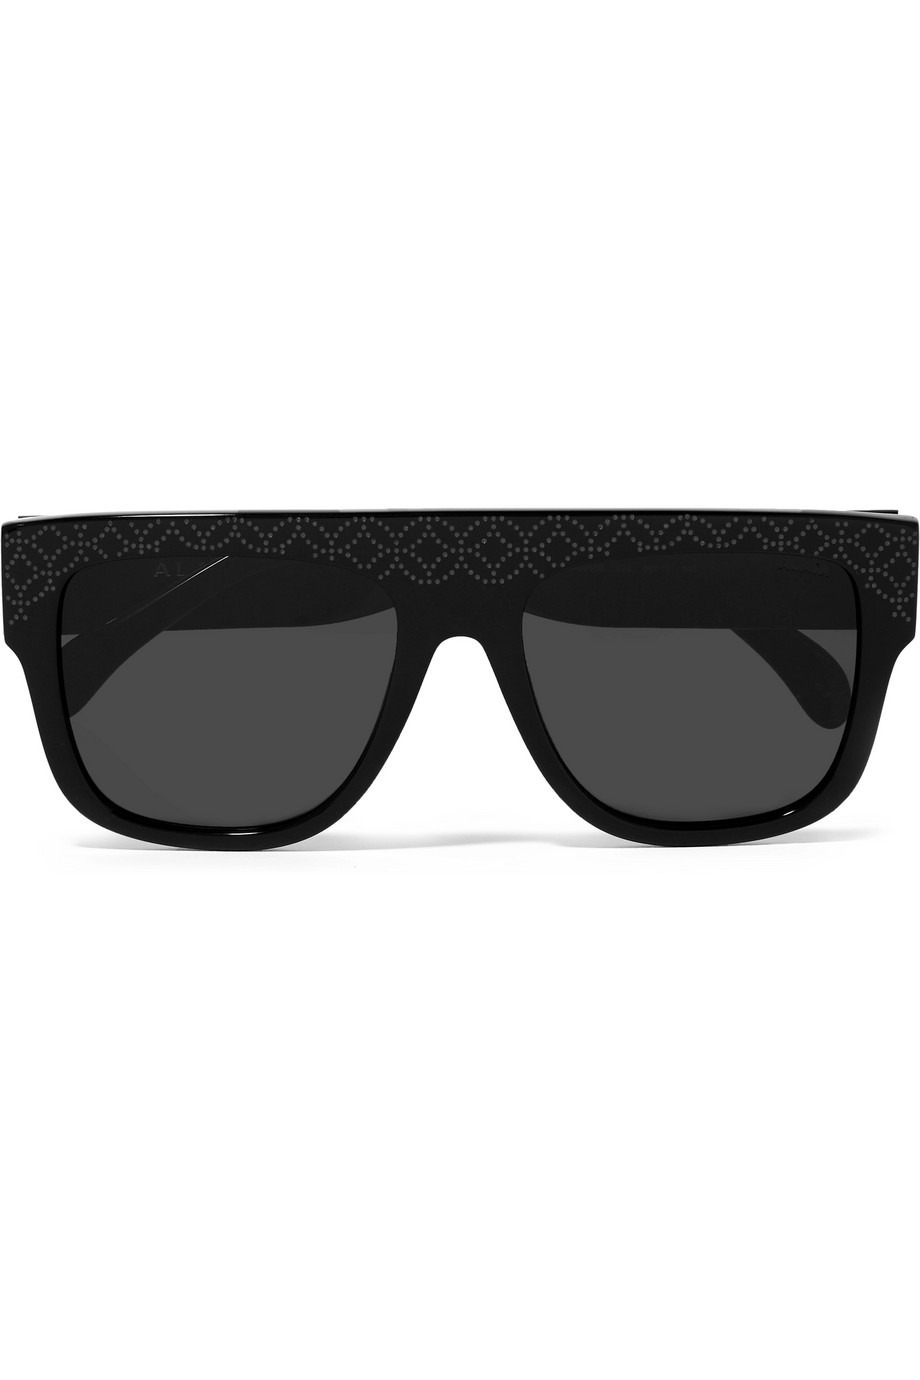 Trend Alarmı: XXL Güneş Gözlükleri